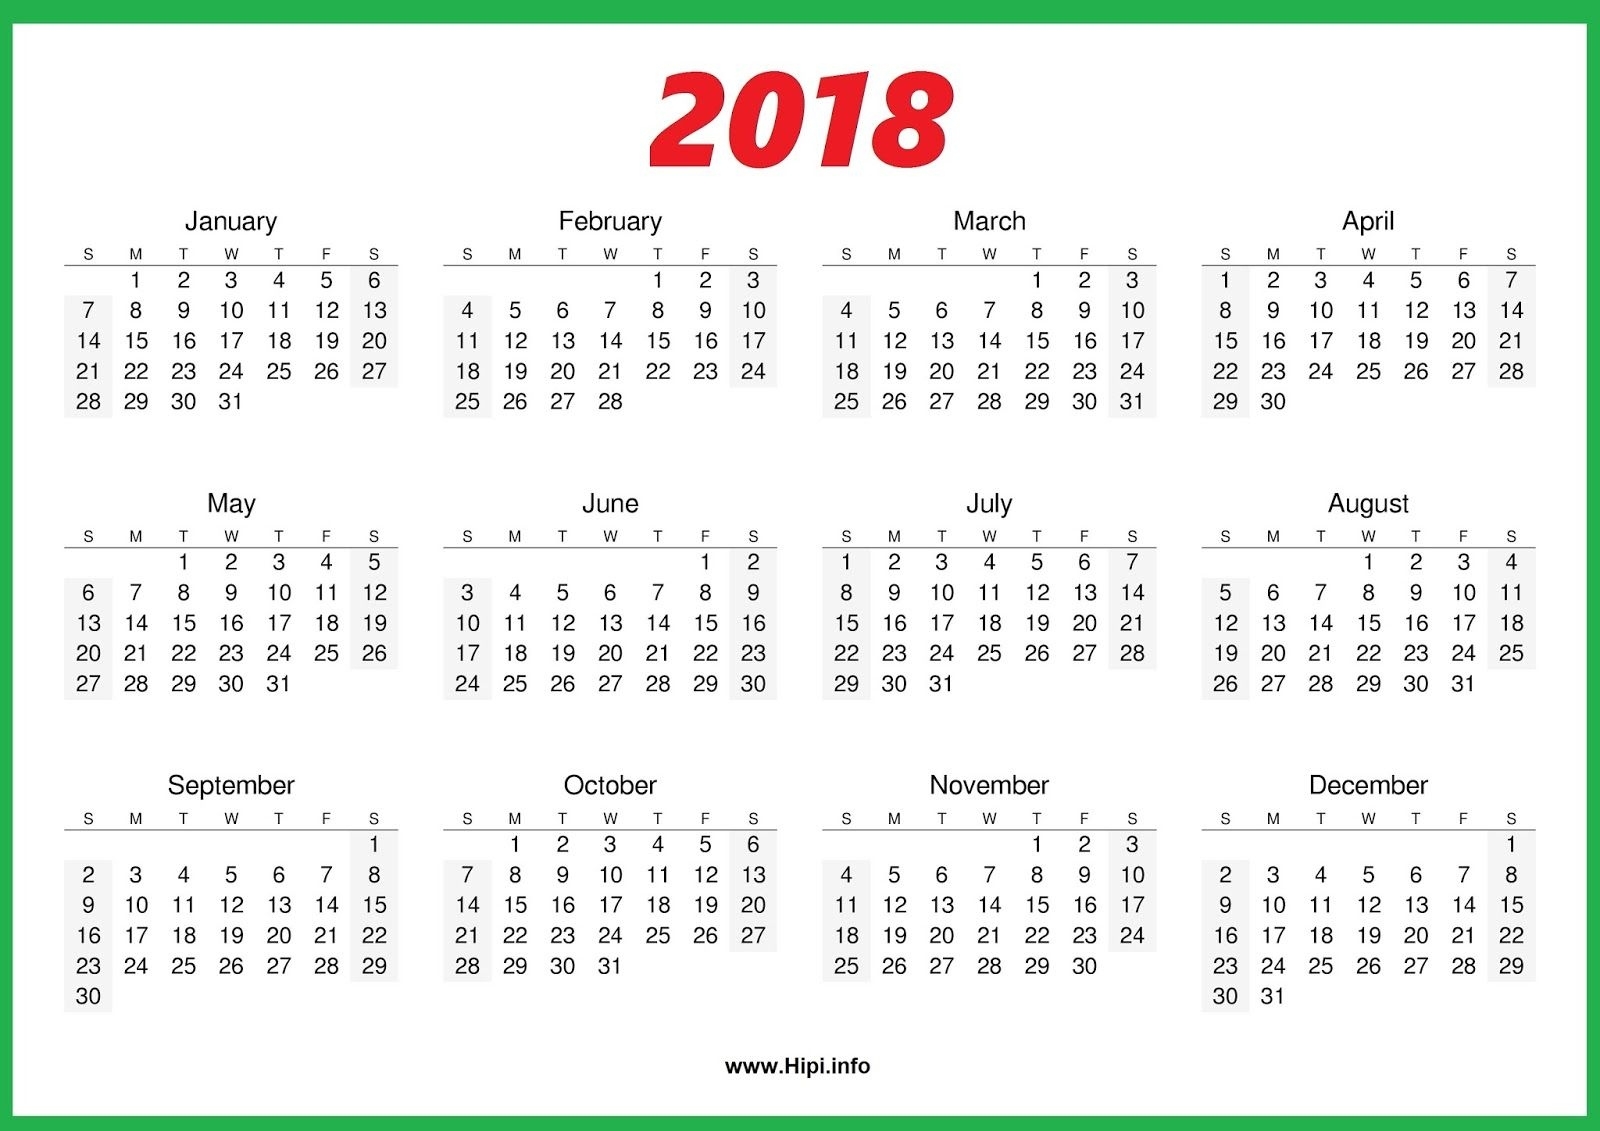 2018 Calendar One Page 2018 Calendar Printables | News To Go 4 Calendar Printing One Page